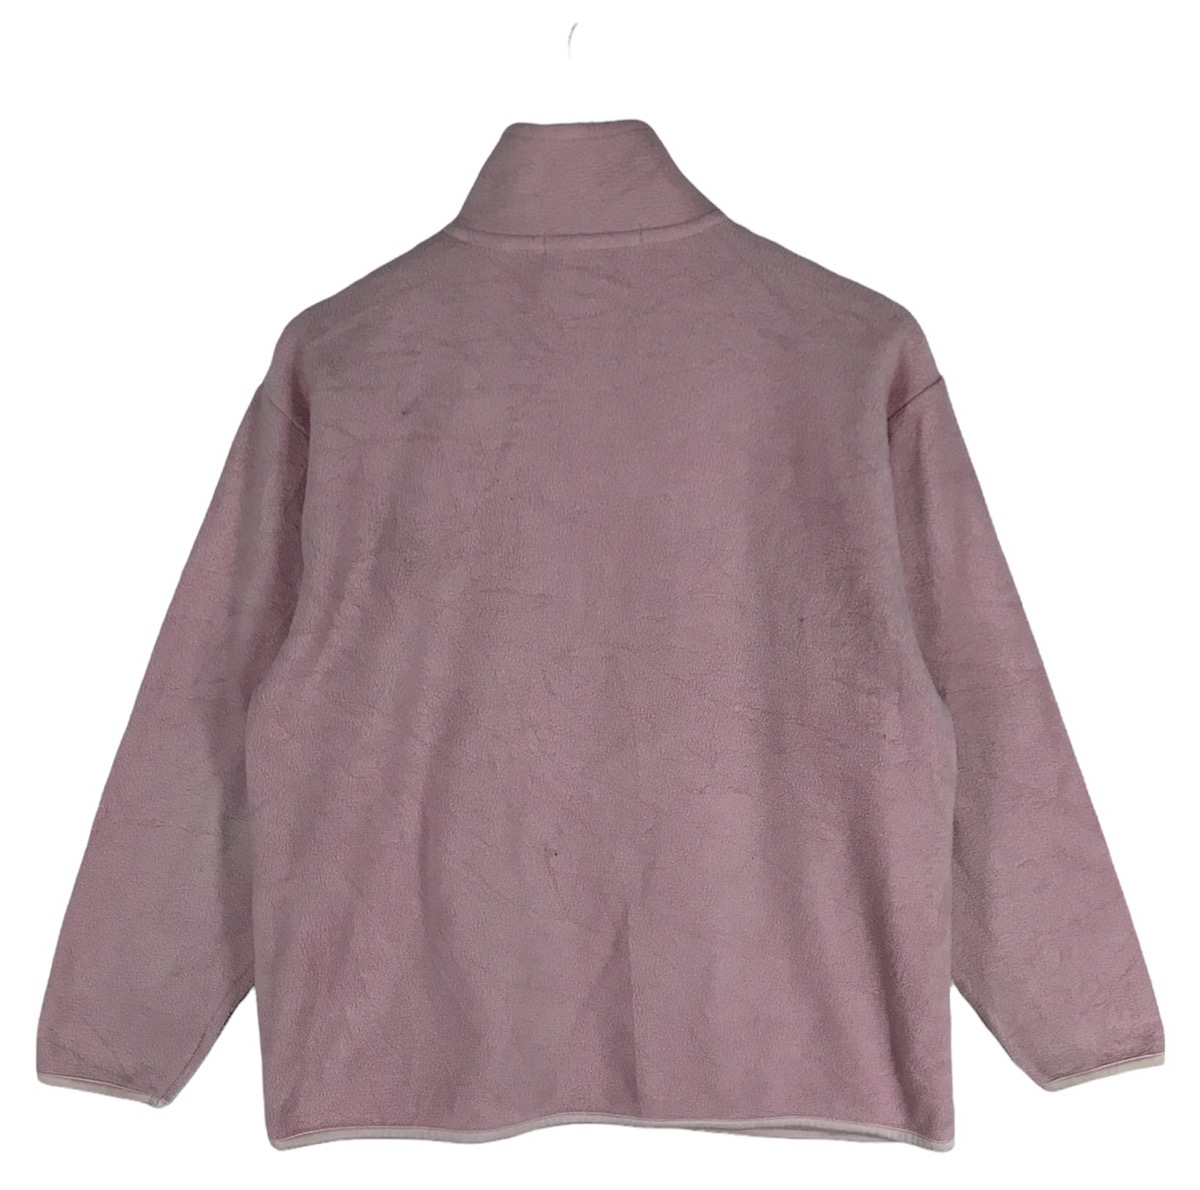 Vintage - Giulia Rosetta Fleece Sweaters - 3